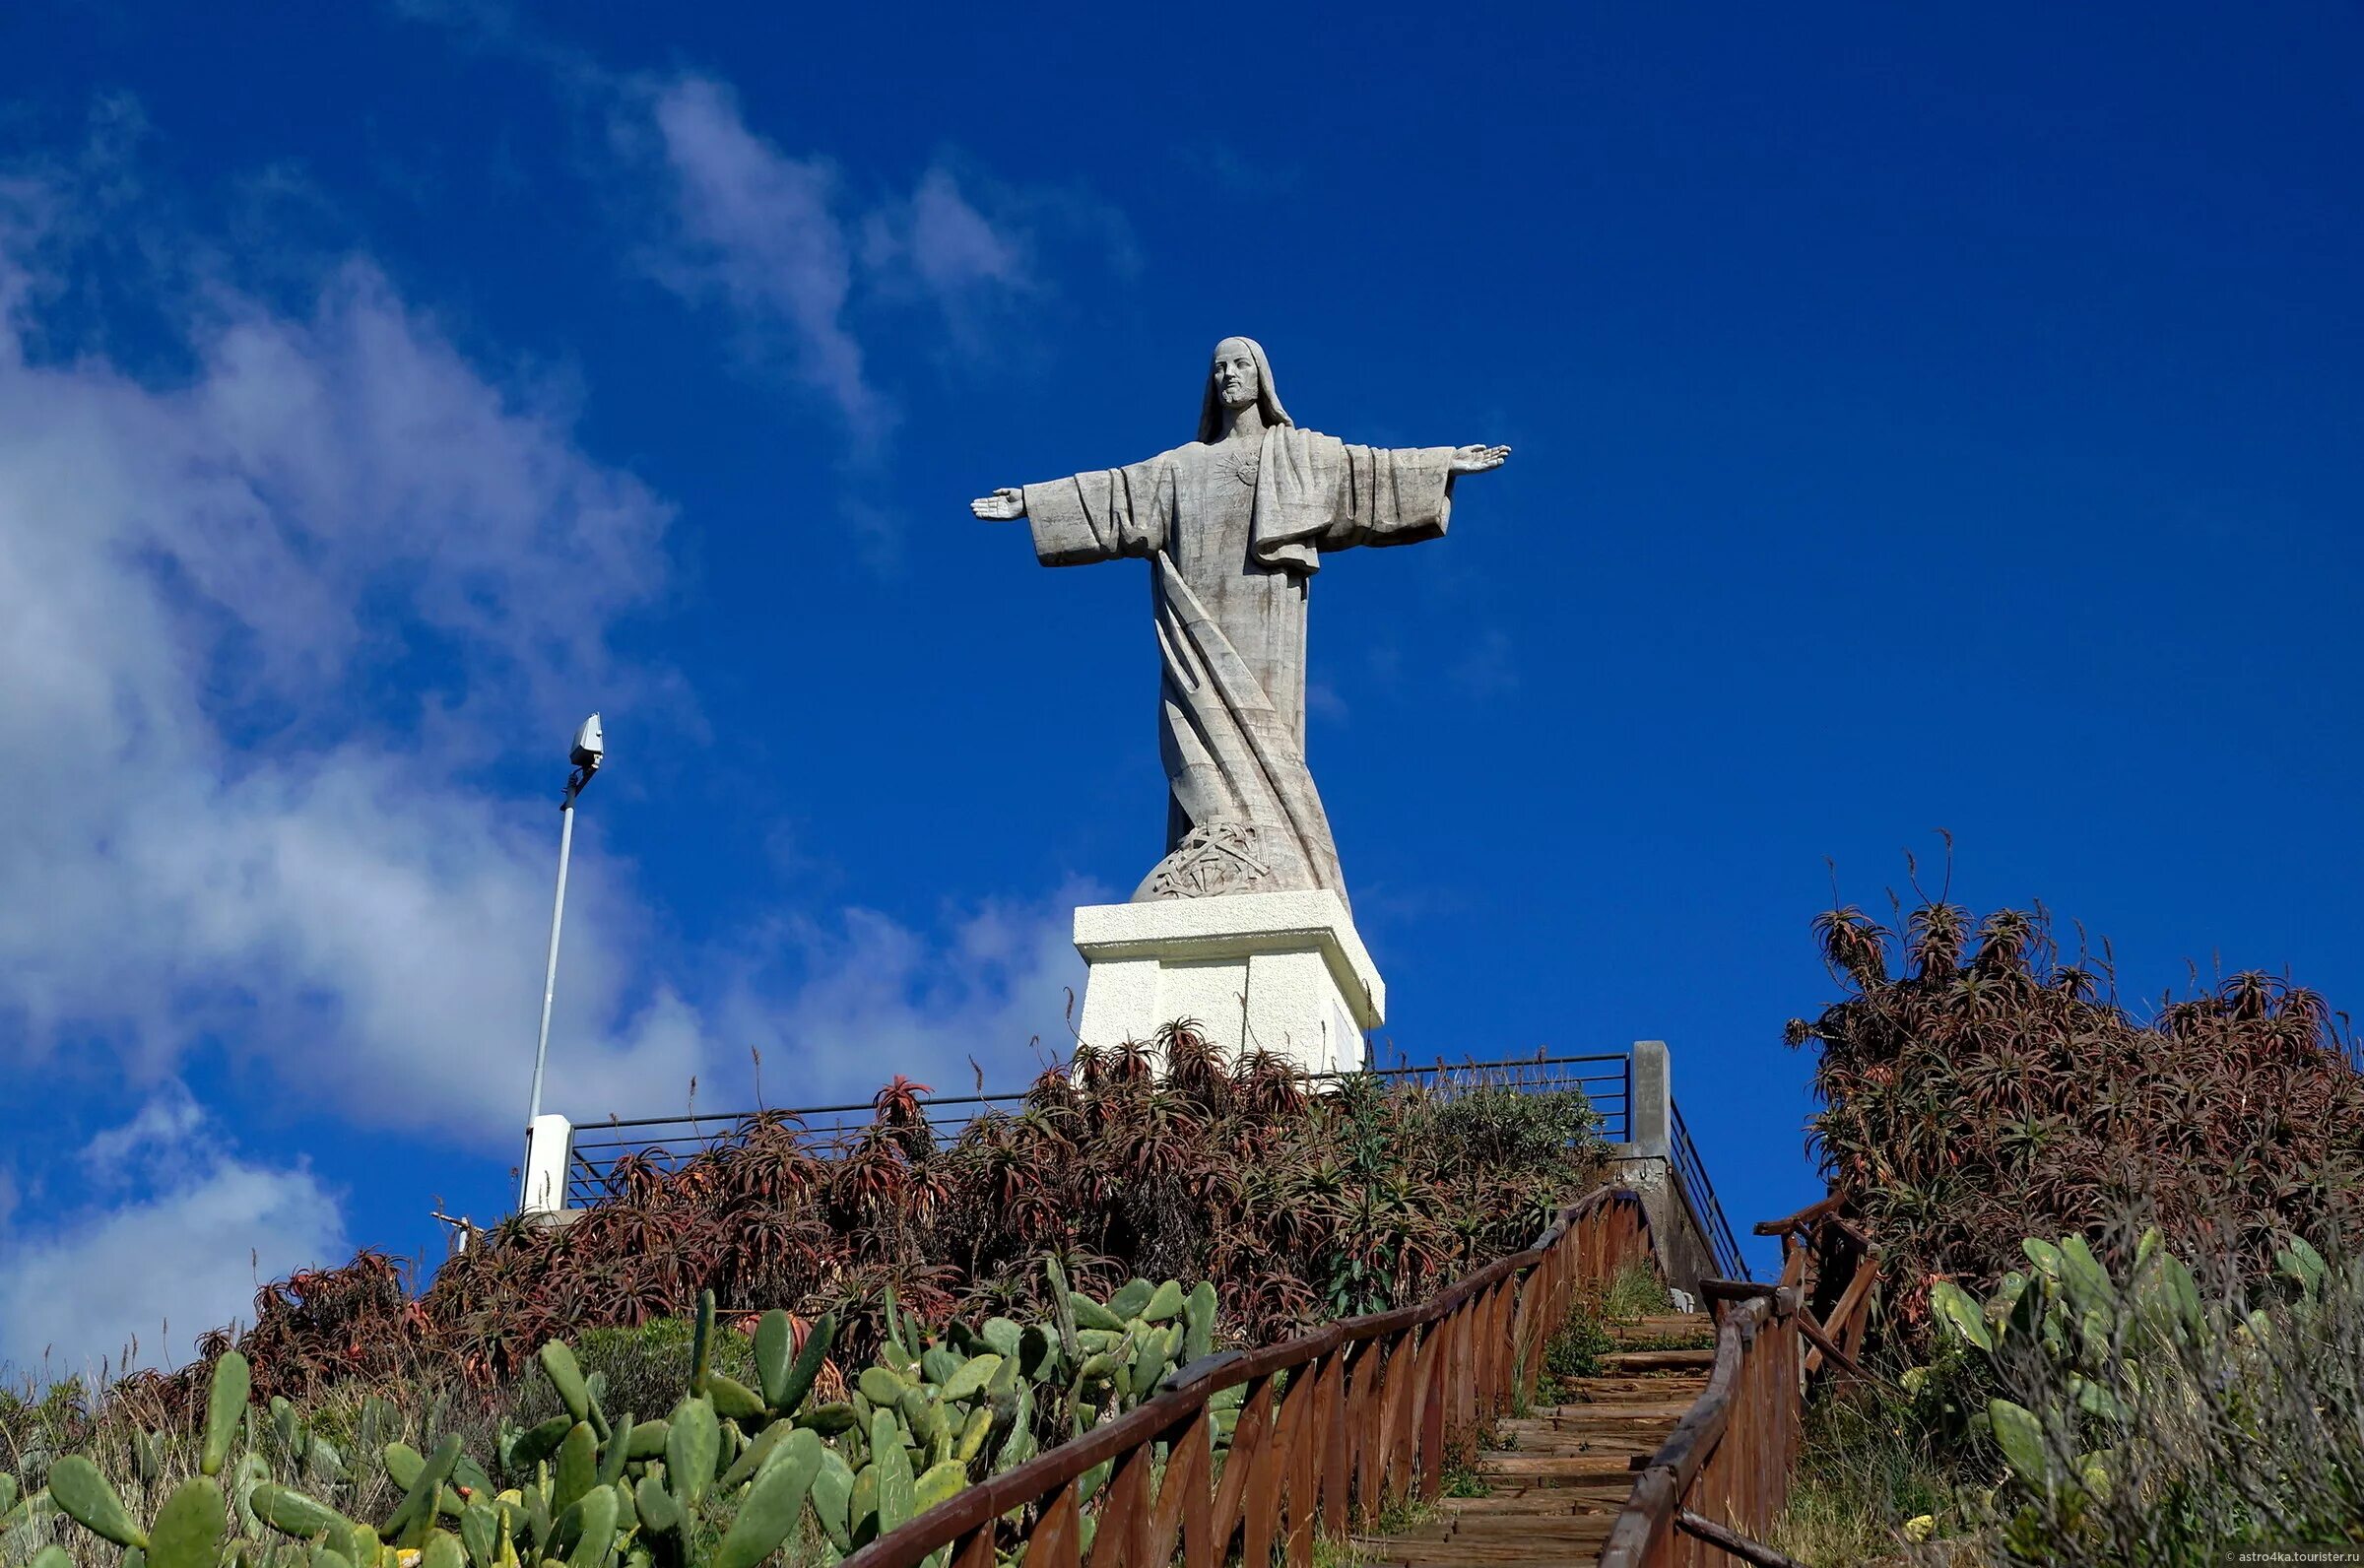 Села рио. Статуя Христа Мадейра. Статуя Христа Лиссабон. Статуя Христа Фуншал. Кришту Рей в Лиссабоне.